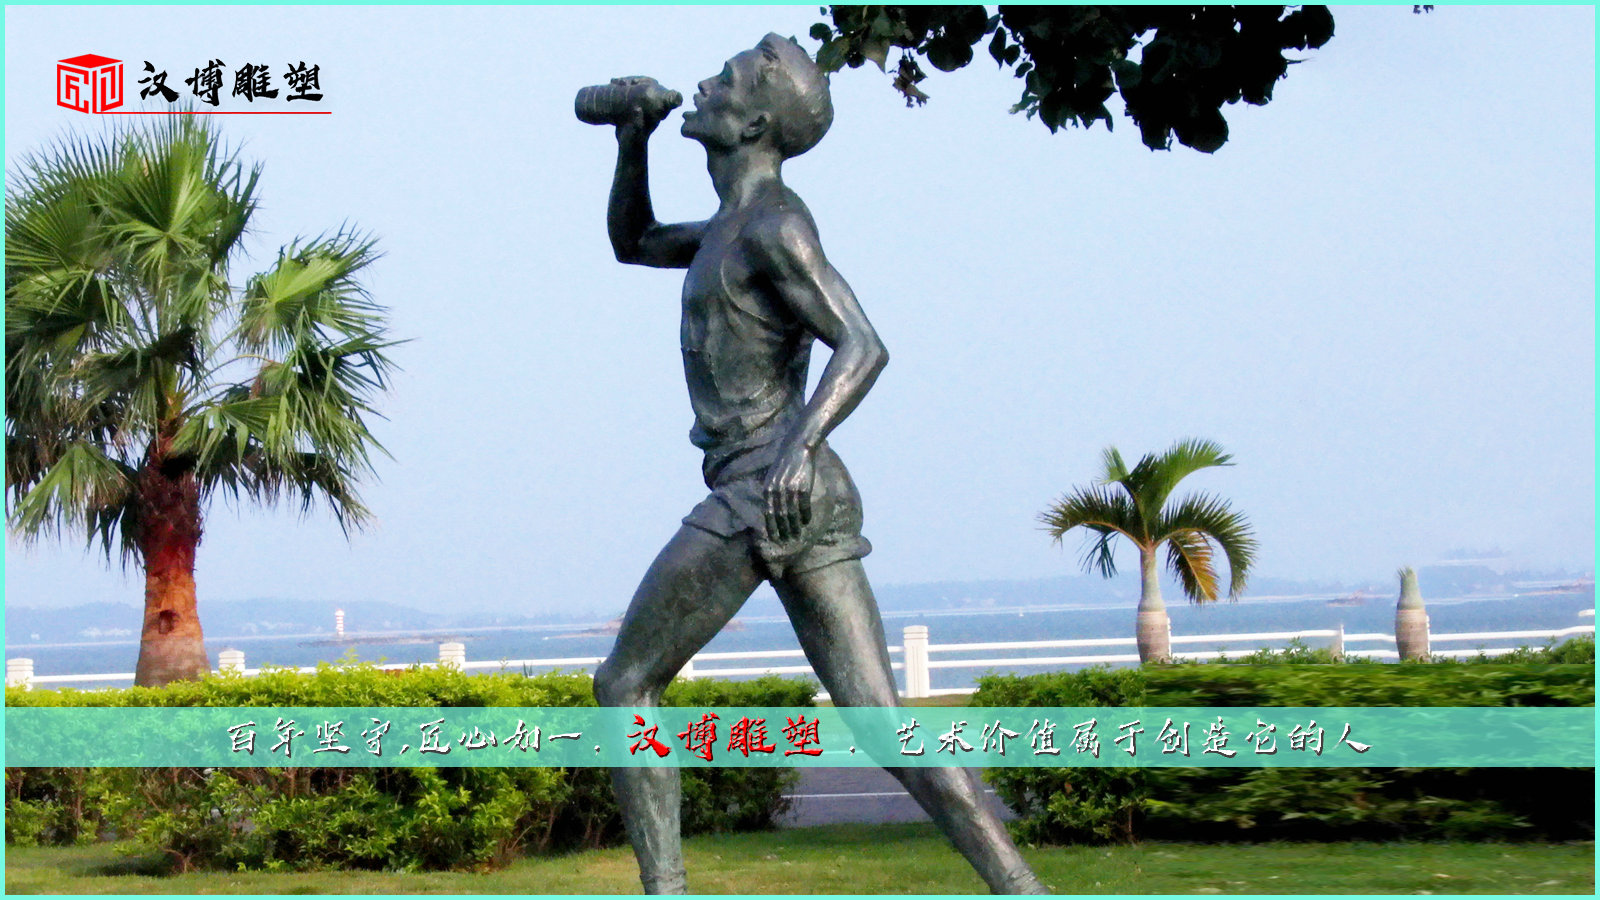 运动主题雕塑,城市景观铜雕,户外喝水雕像